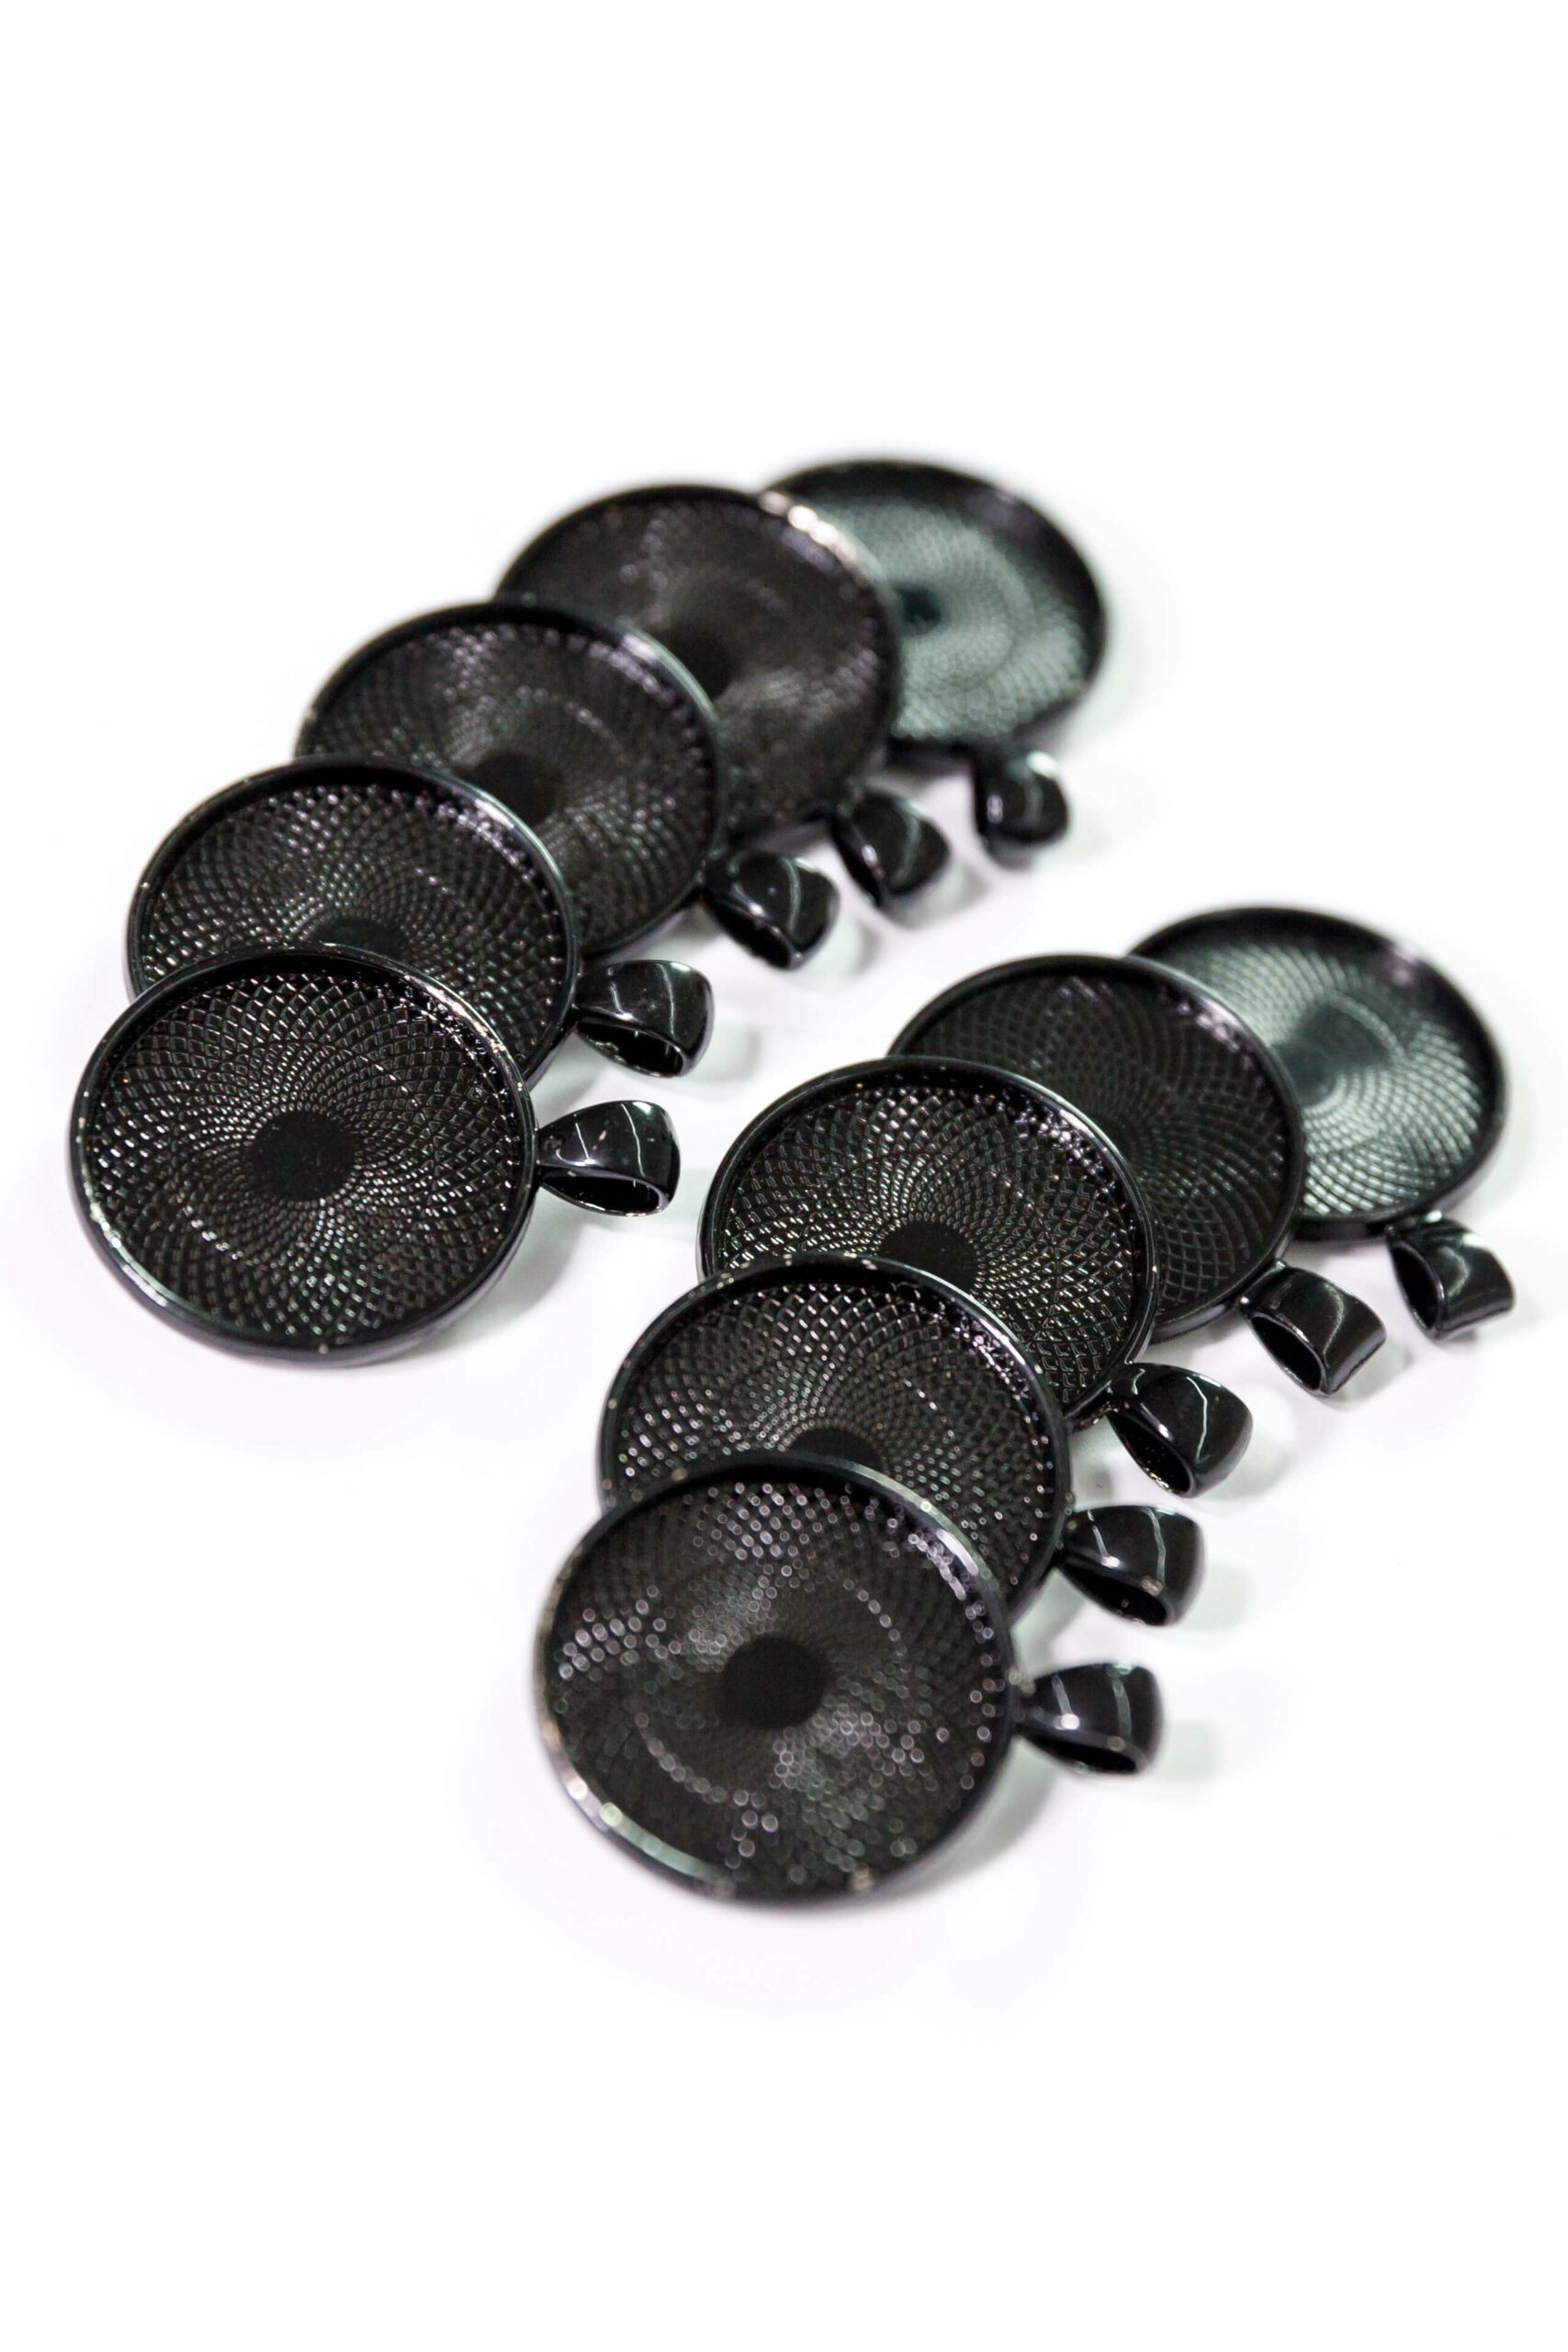 Cabochon Anhängerfassung schwarz rund 25 mm 10 Stück